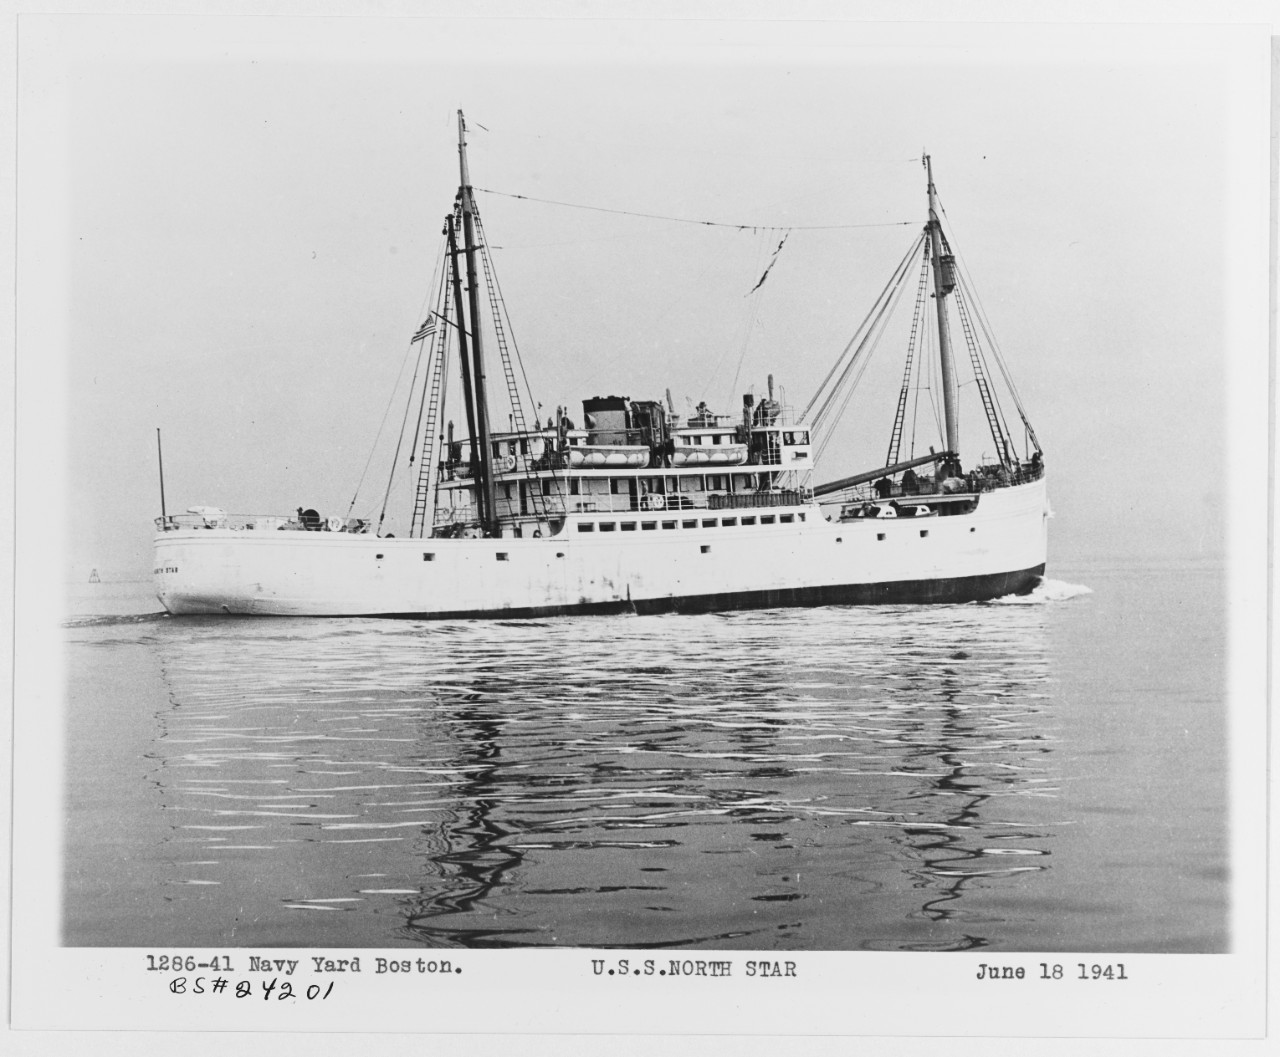 USCGC NORTH STAR